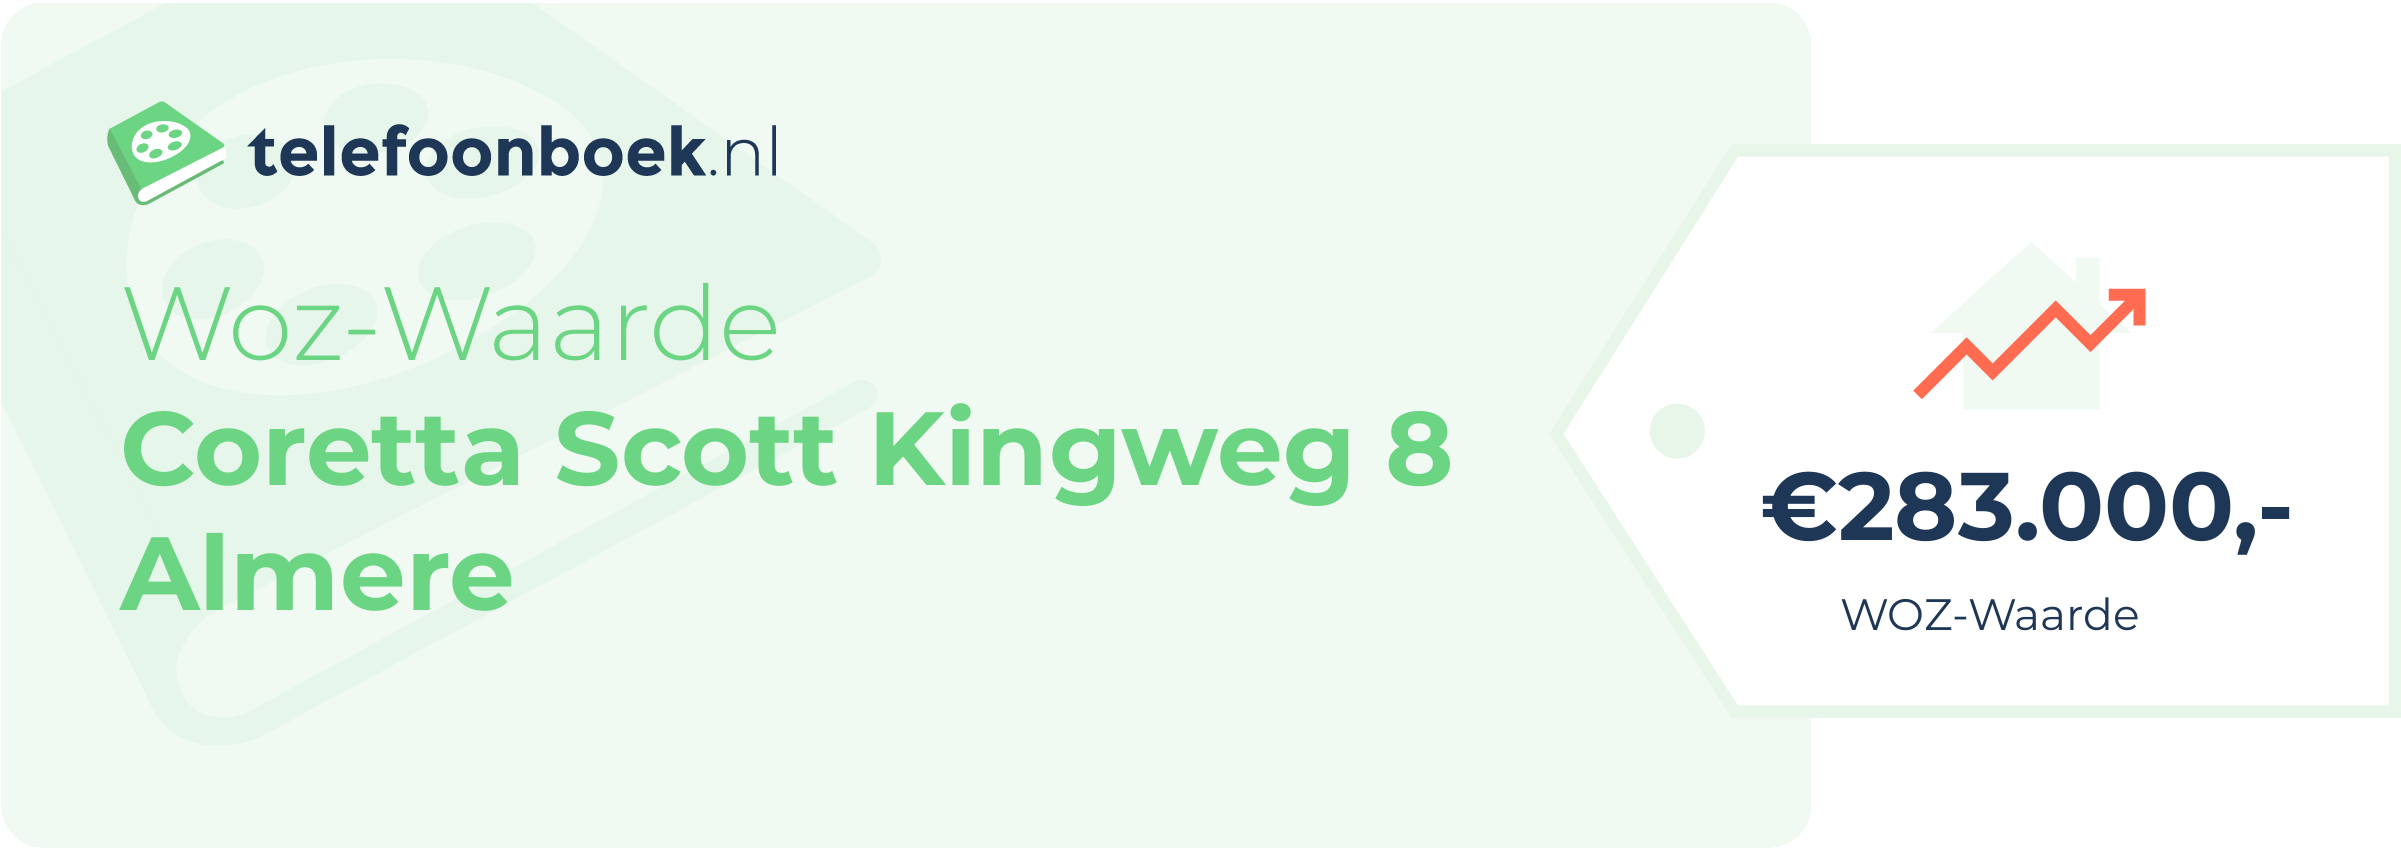 WOZ-waarde Coretta Scott Kingweg 8 Almere